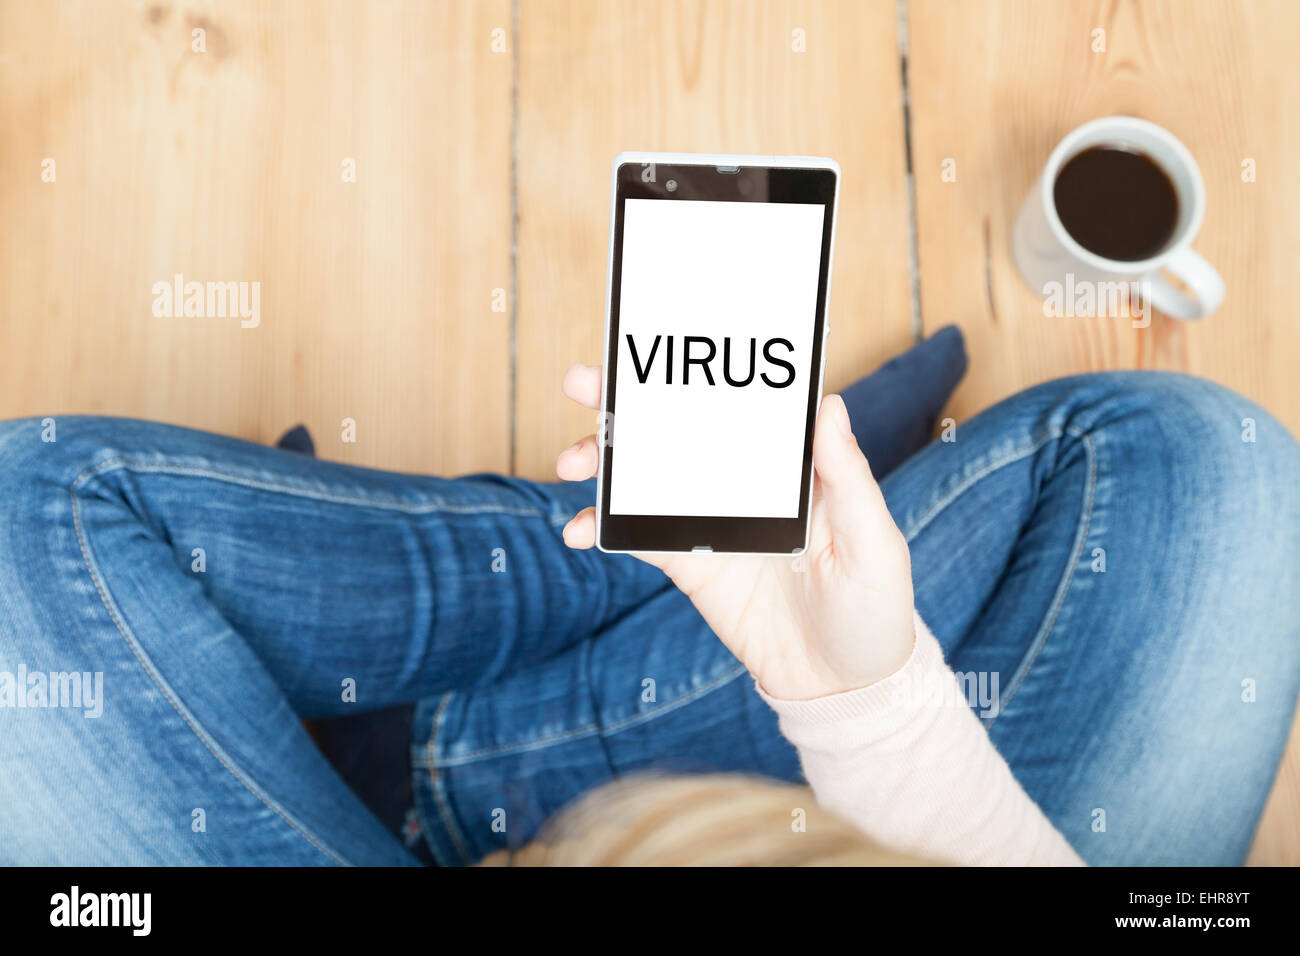 virus written on smartphone Stock Photo